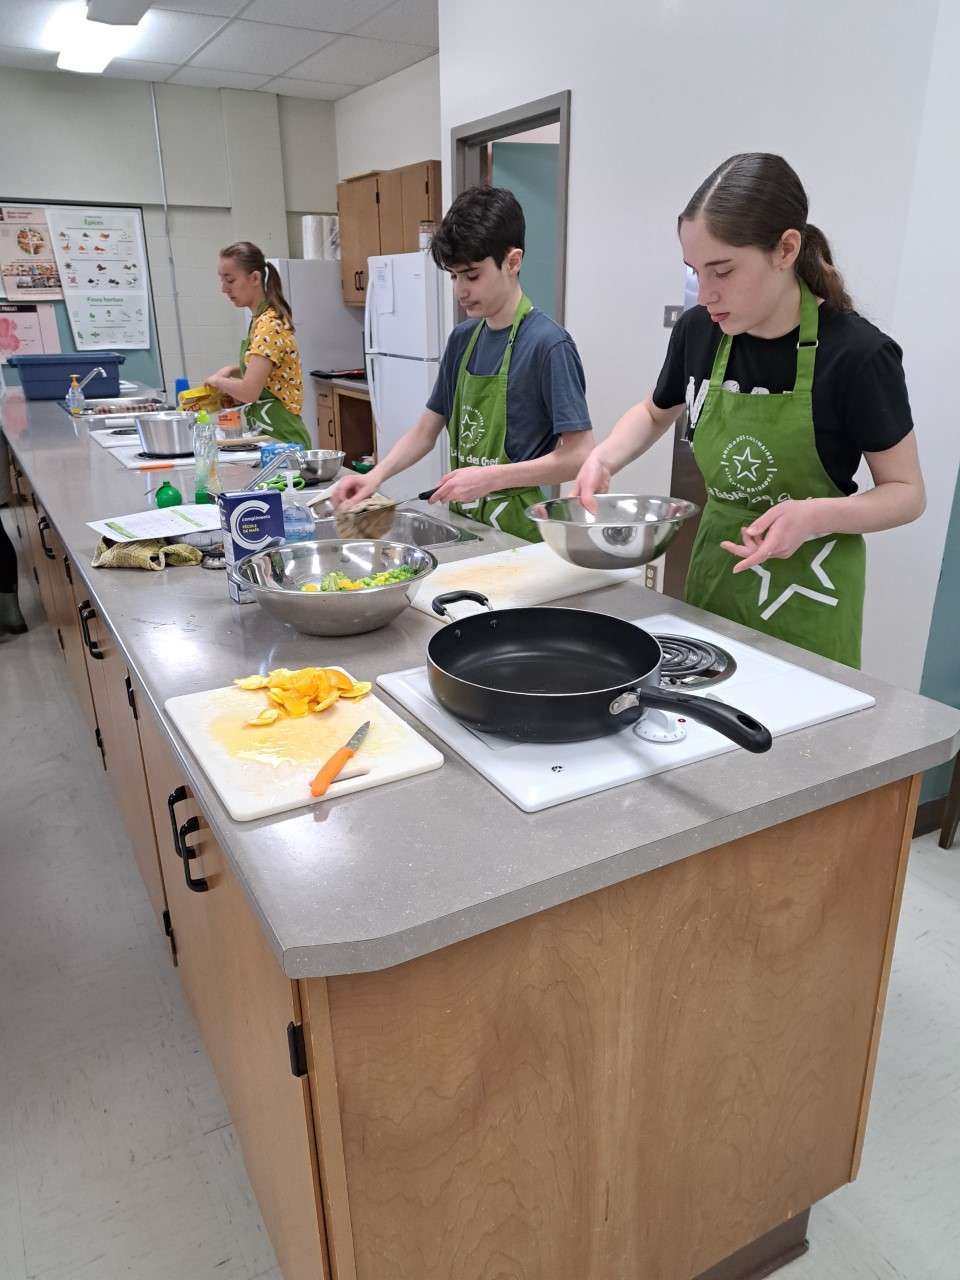 Les jeunes cuisiniers en pleine action. On y voit trois élèves en train de cuisine à leur poste de travail respectif. 